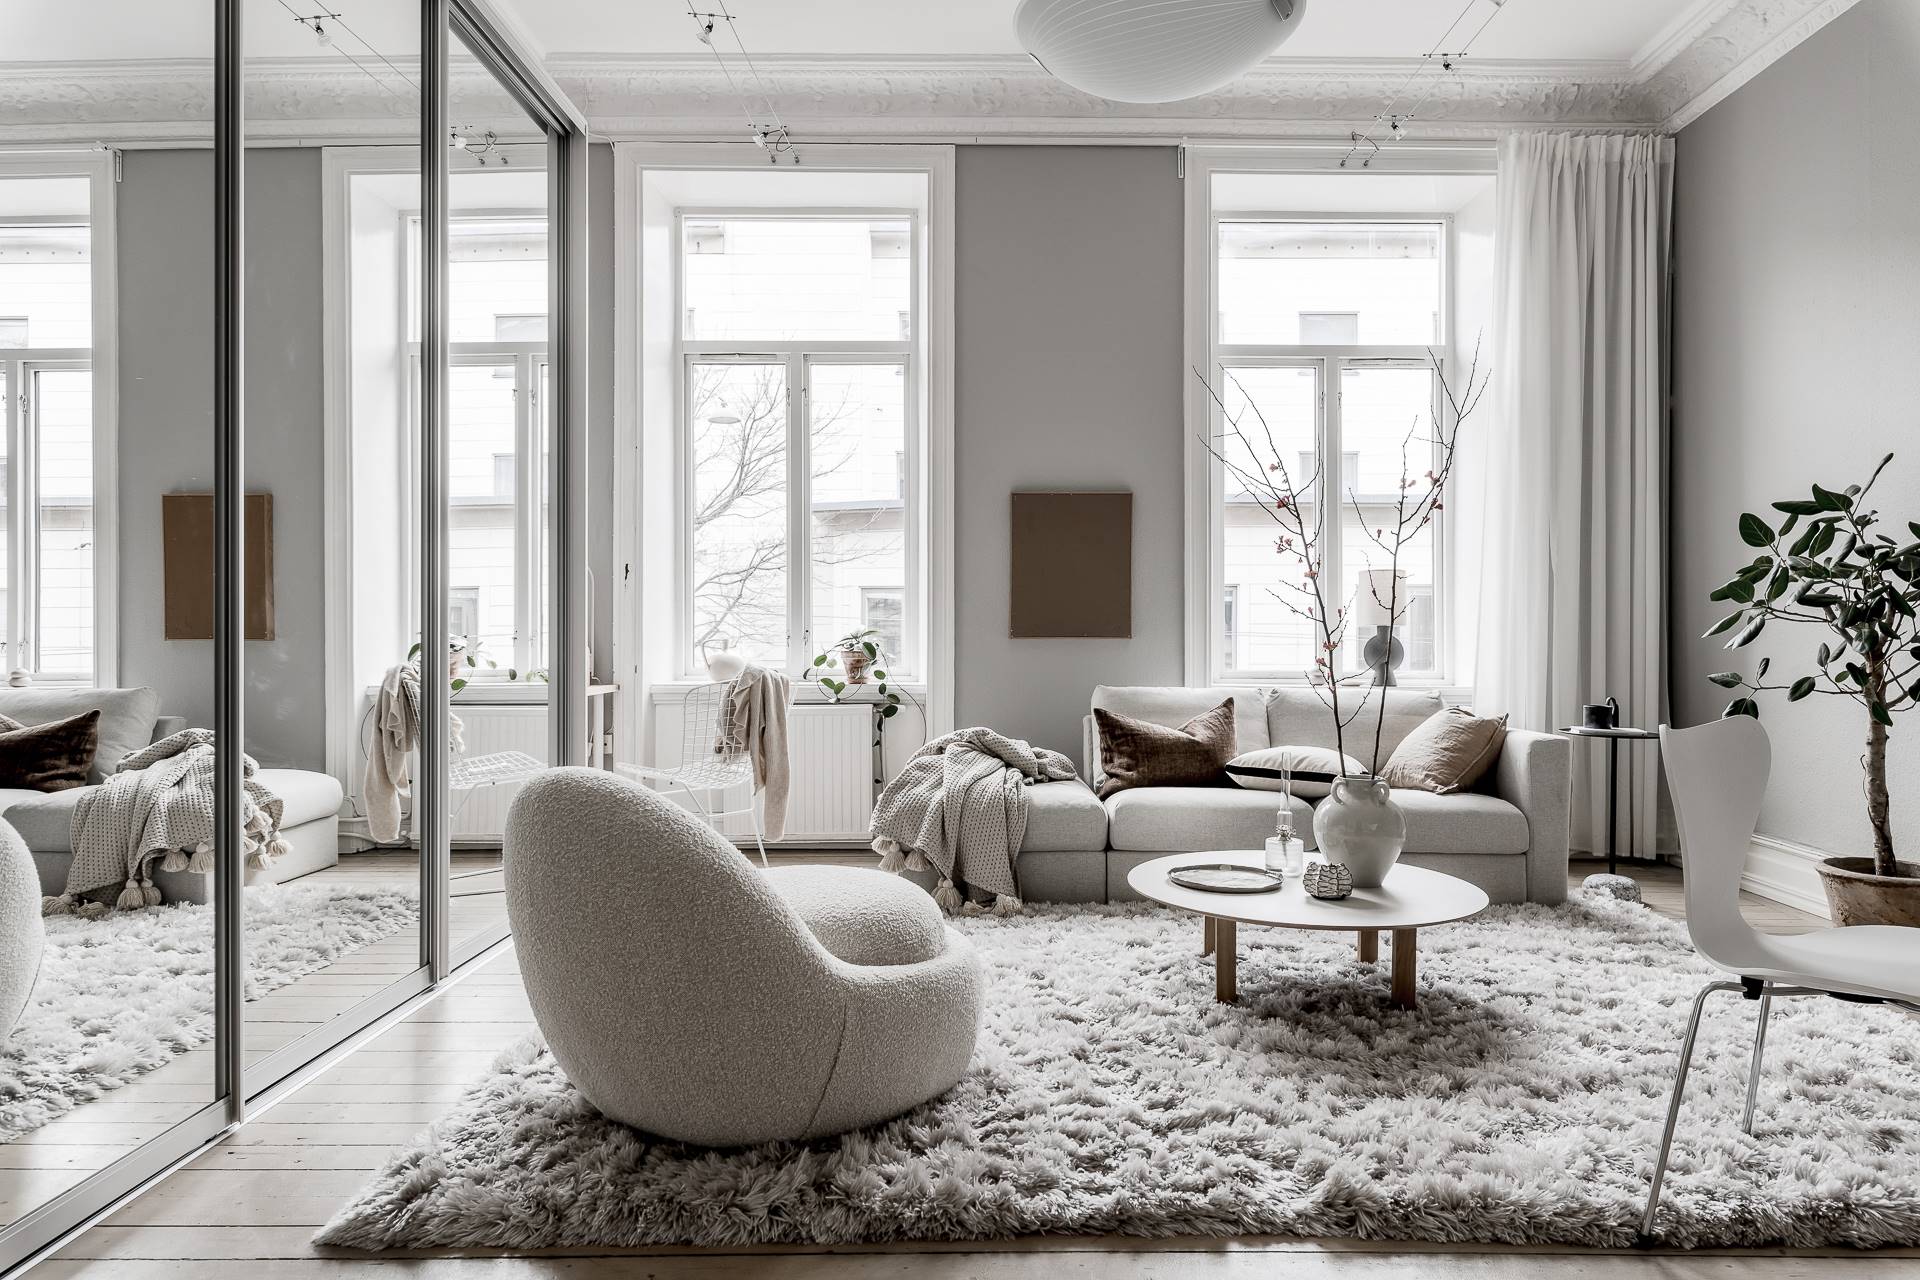 Salón de diseño nórdico decorado en blanco y gris